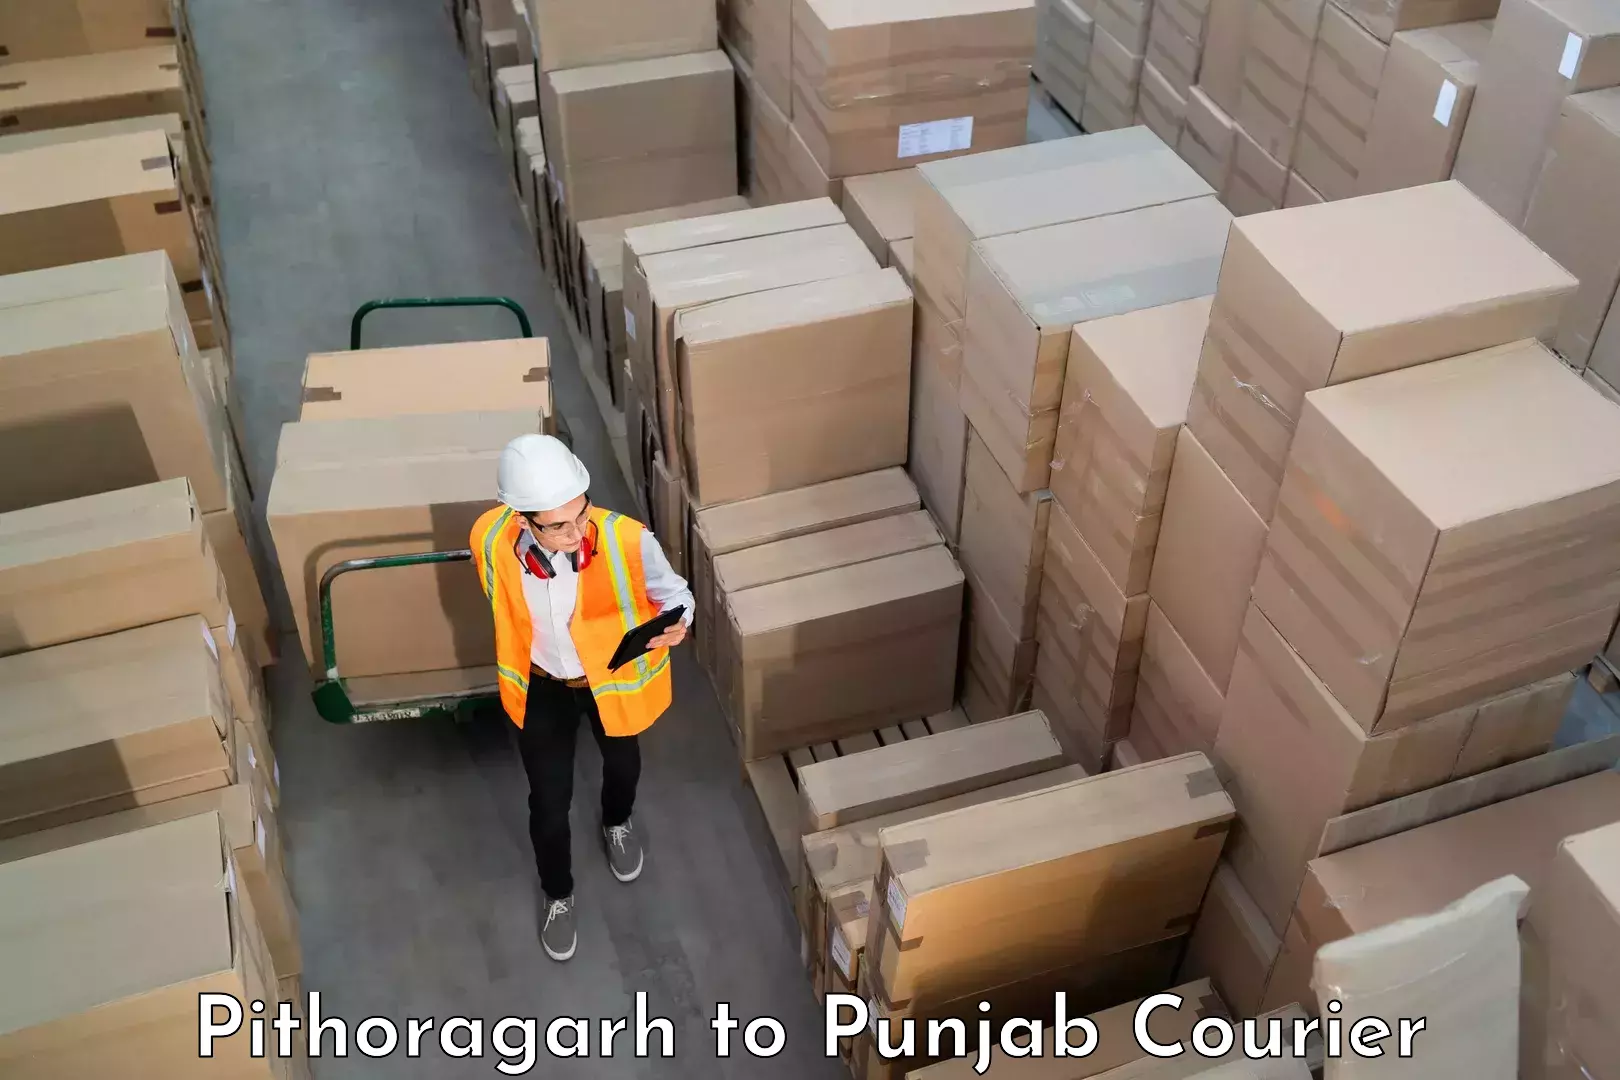 Luggage transport consultancy Pithoragarh to Punjab